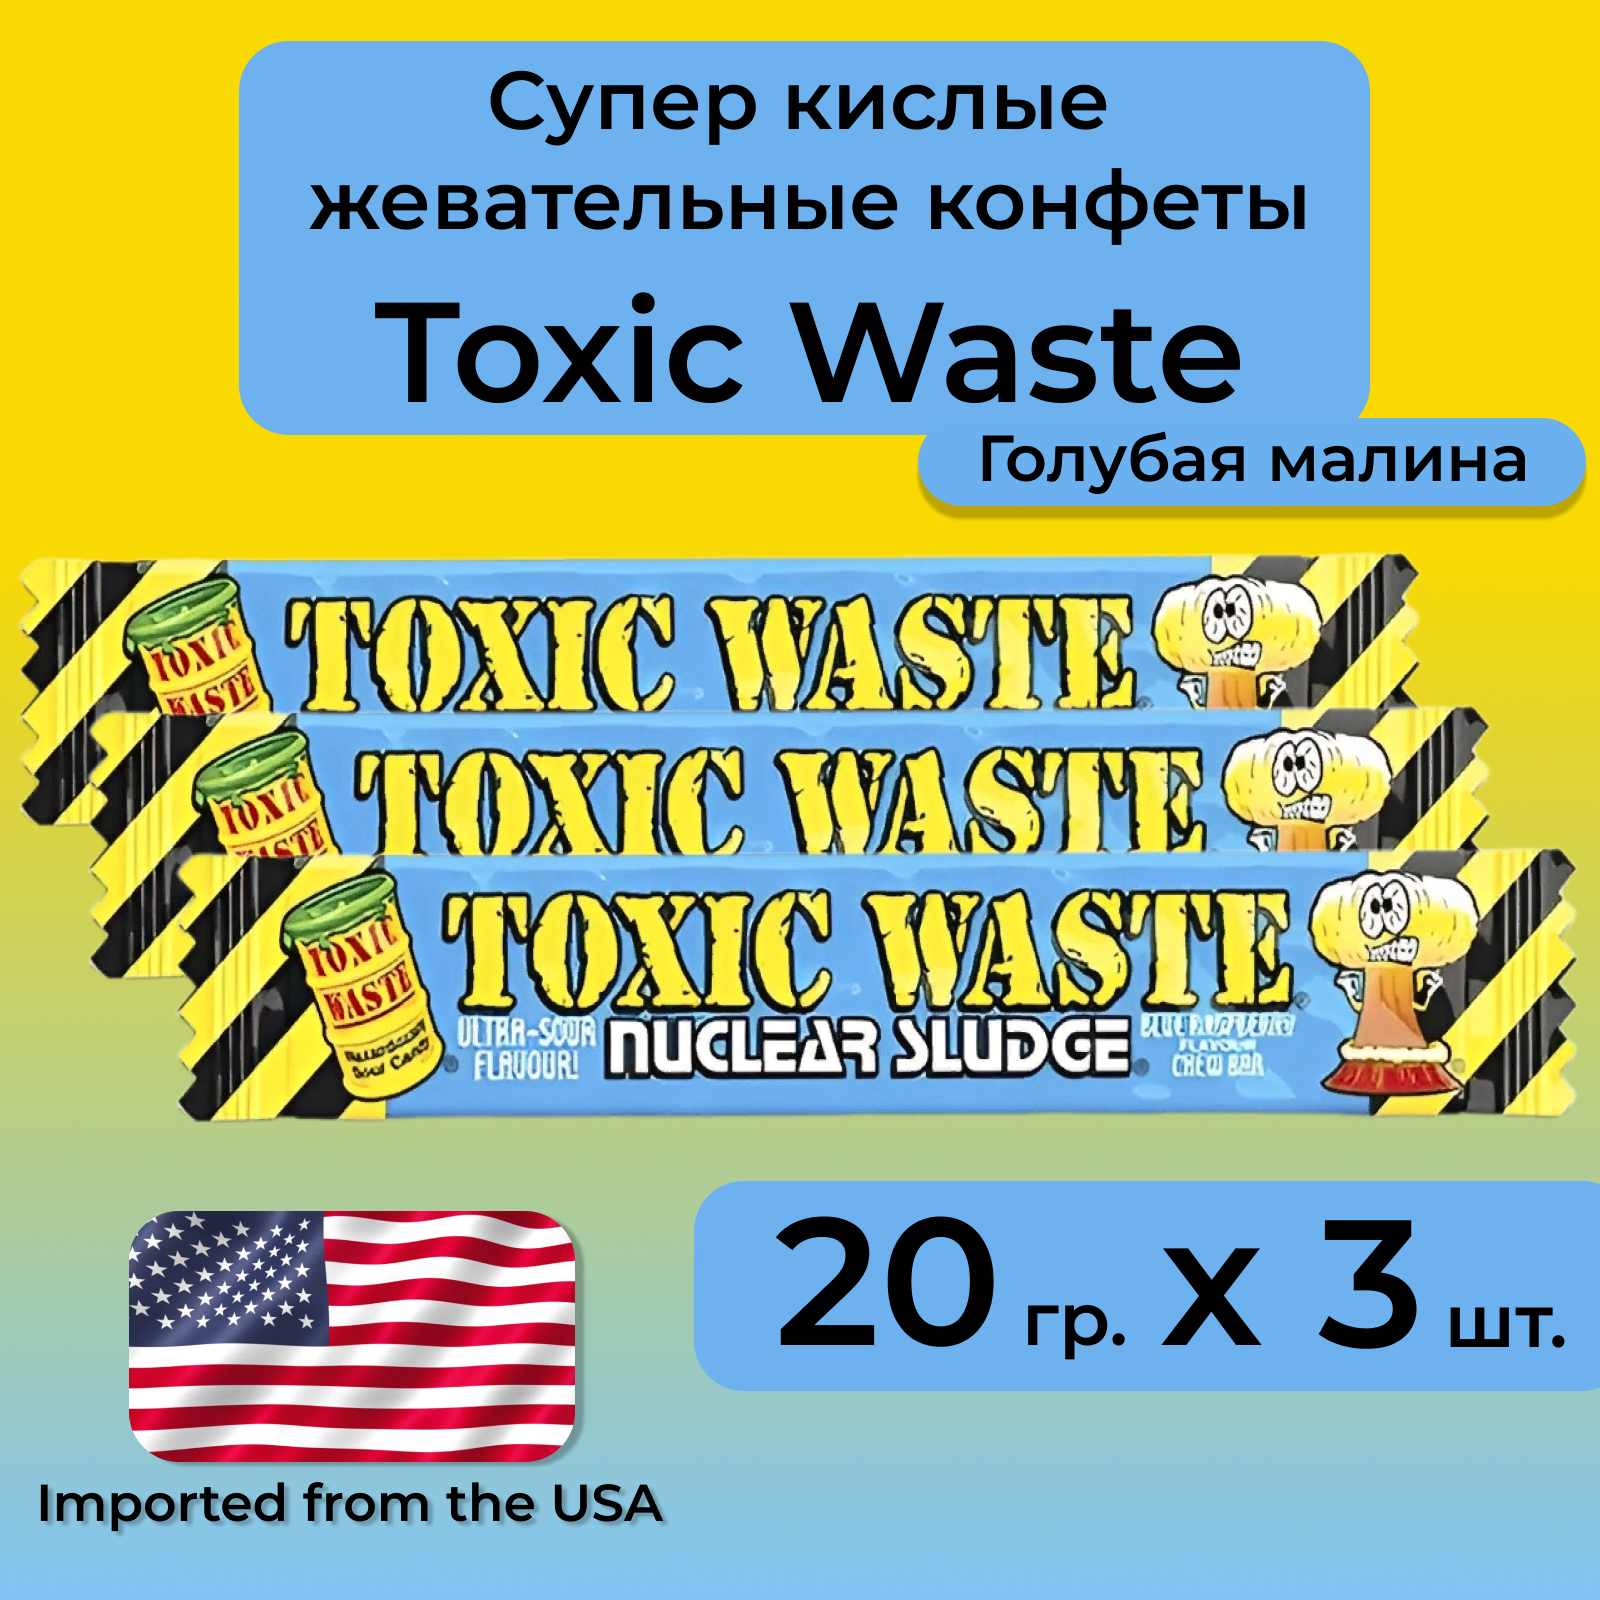 Жевательные кислые конфеты Toxic Waste со вкусом голубой малины, 3 штуки по 20 г